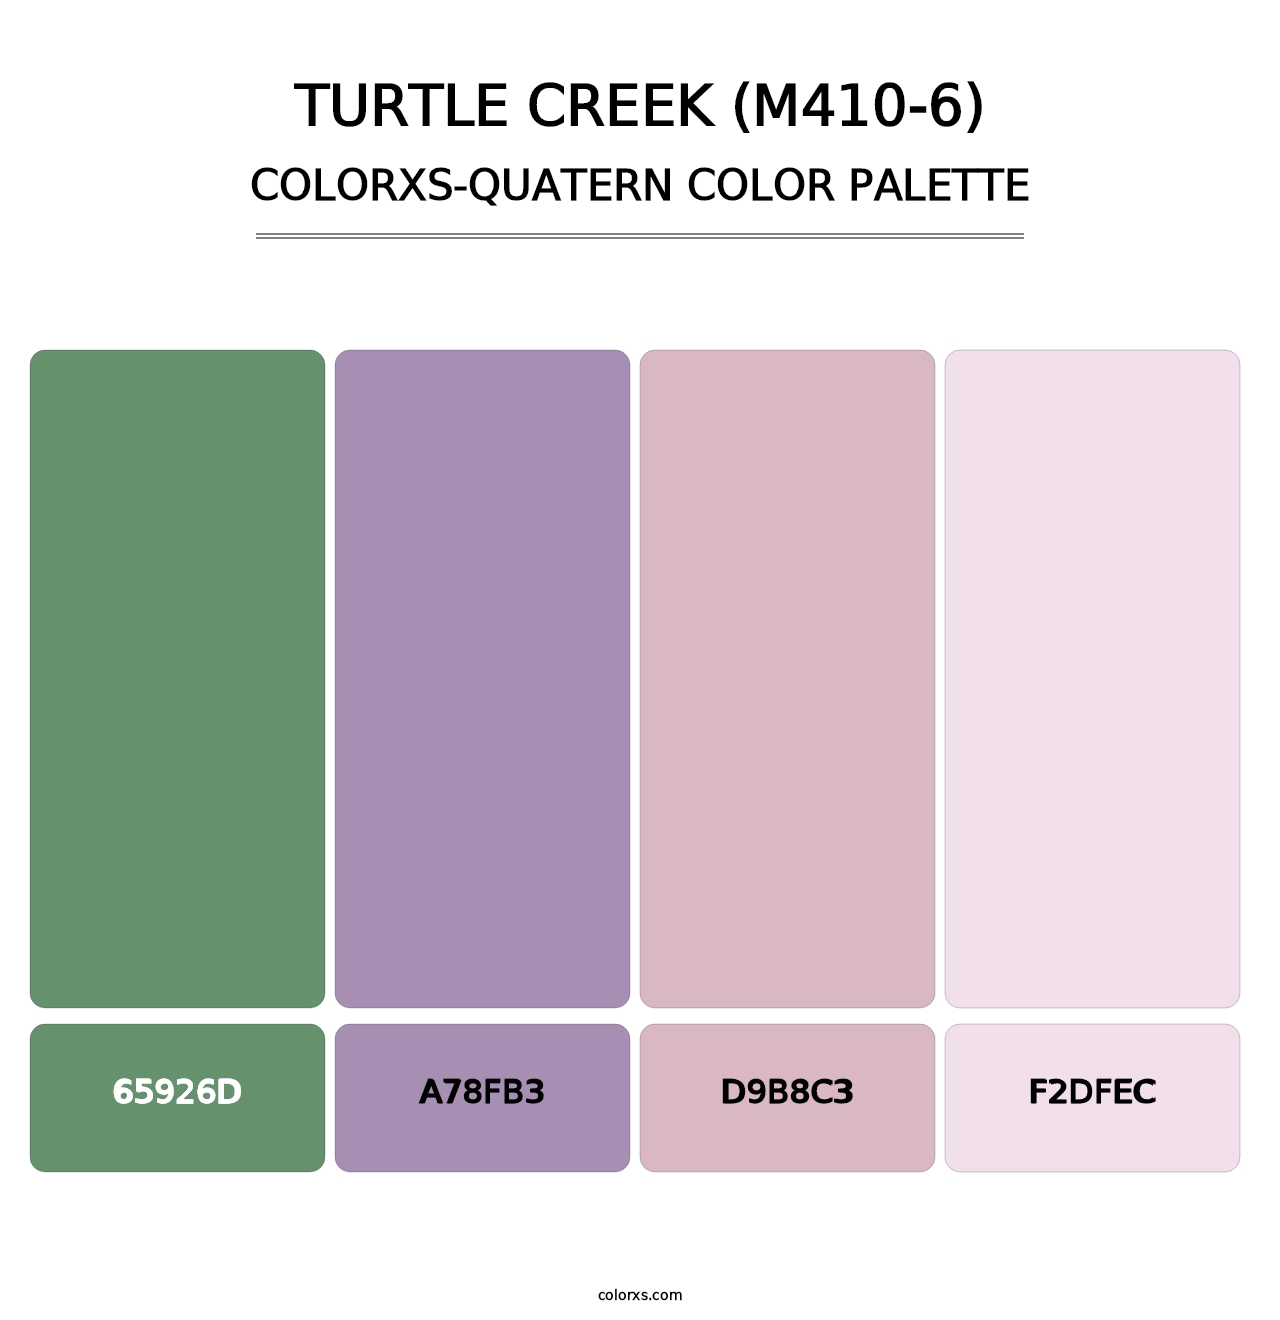 Turtle Creek (M410-6) - Colorxs Quatern Palette